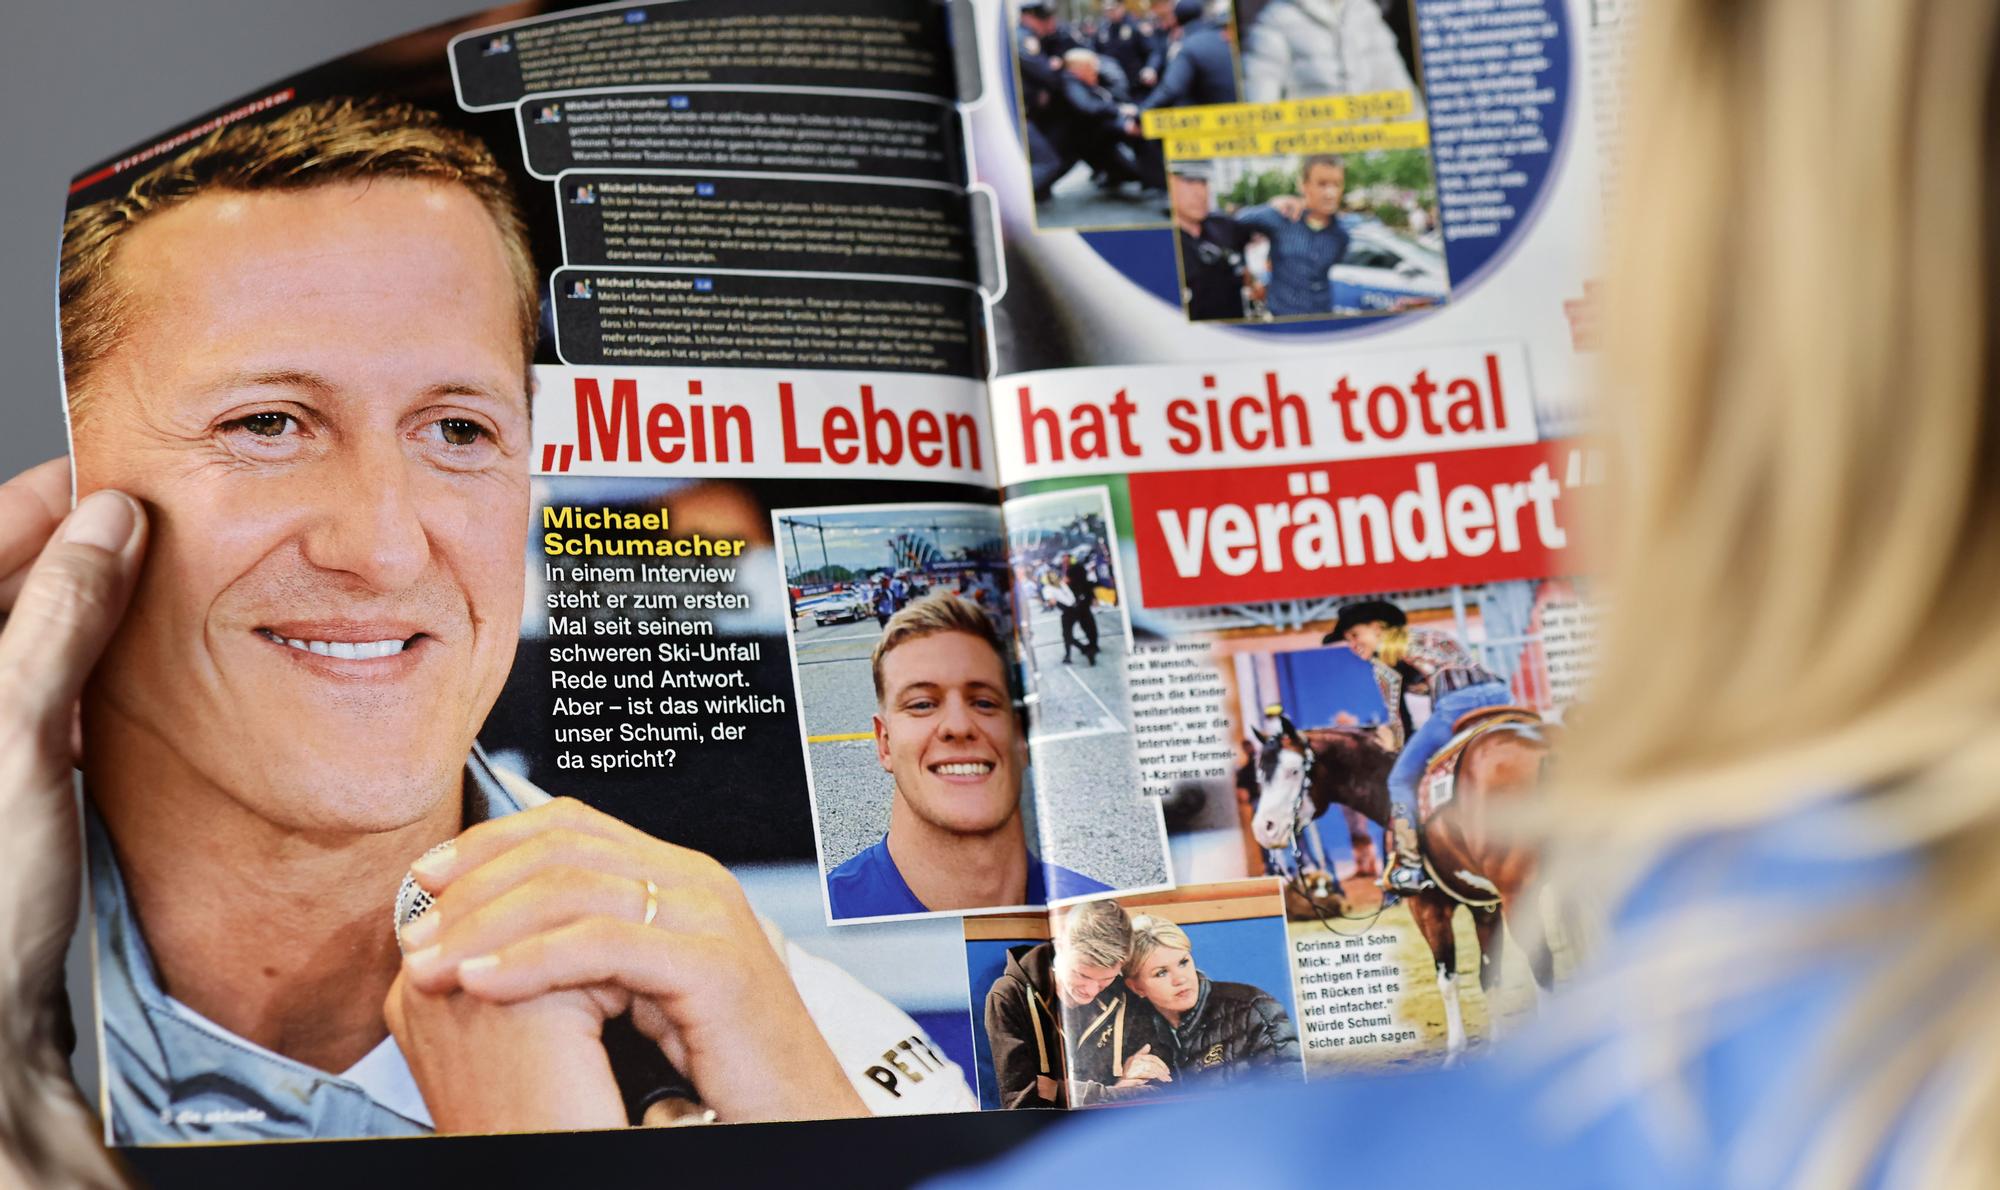 German weekly magazine runs fake Schumacher interview